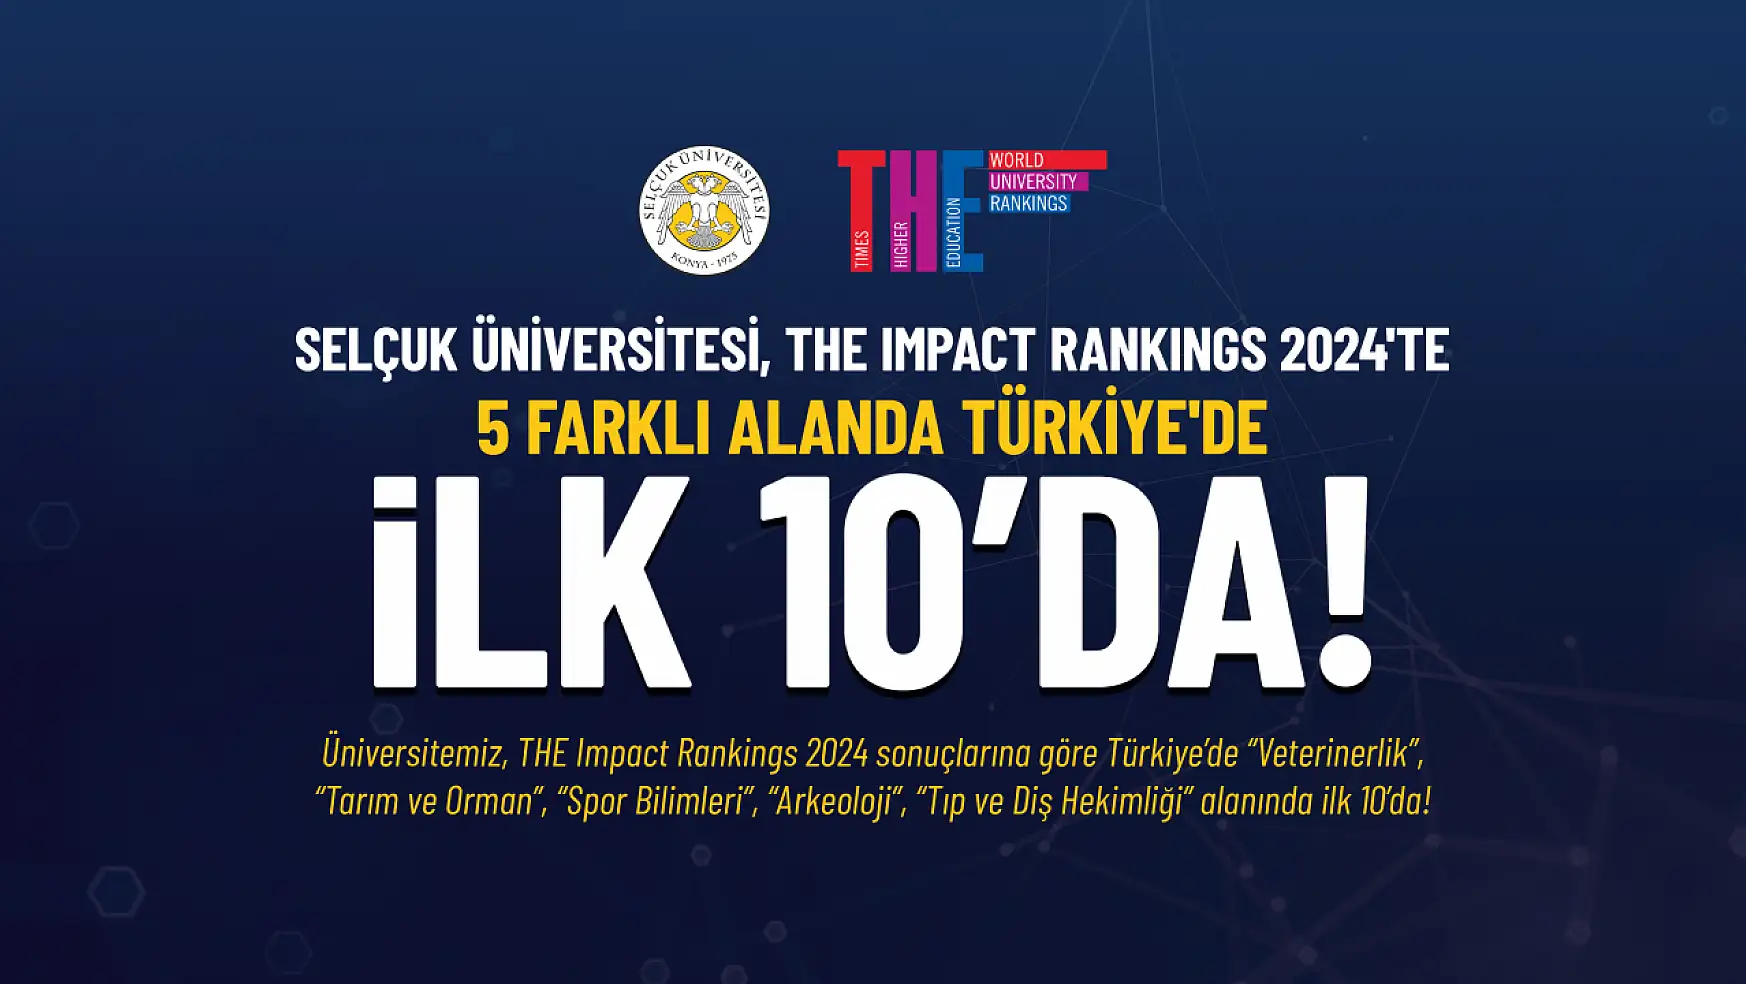 Konya'nın o üniversitesi, THE sıralamasında 19. sırada yer aldı